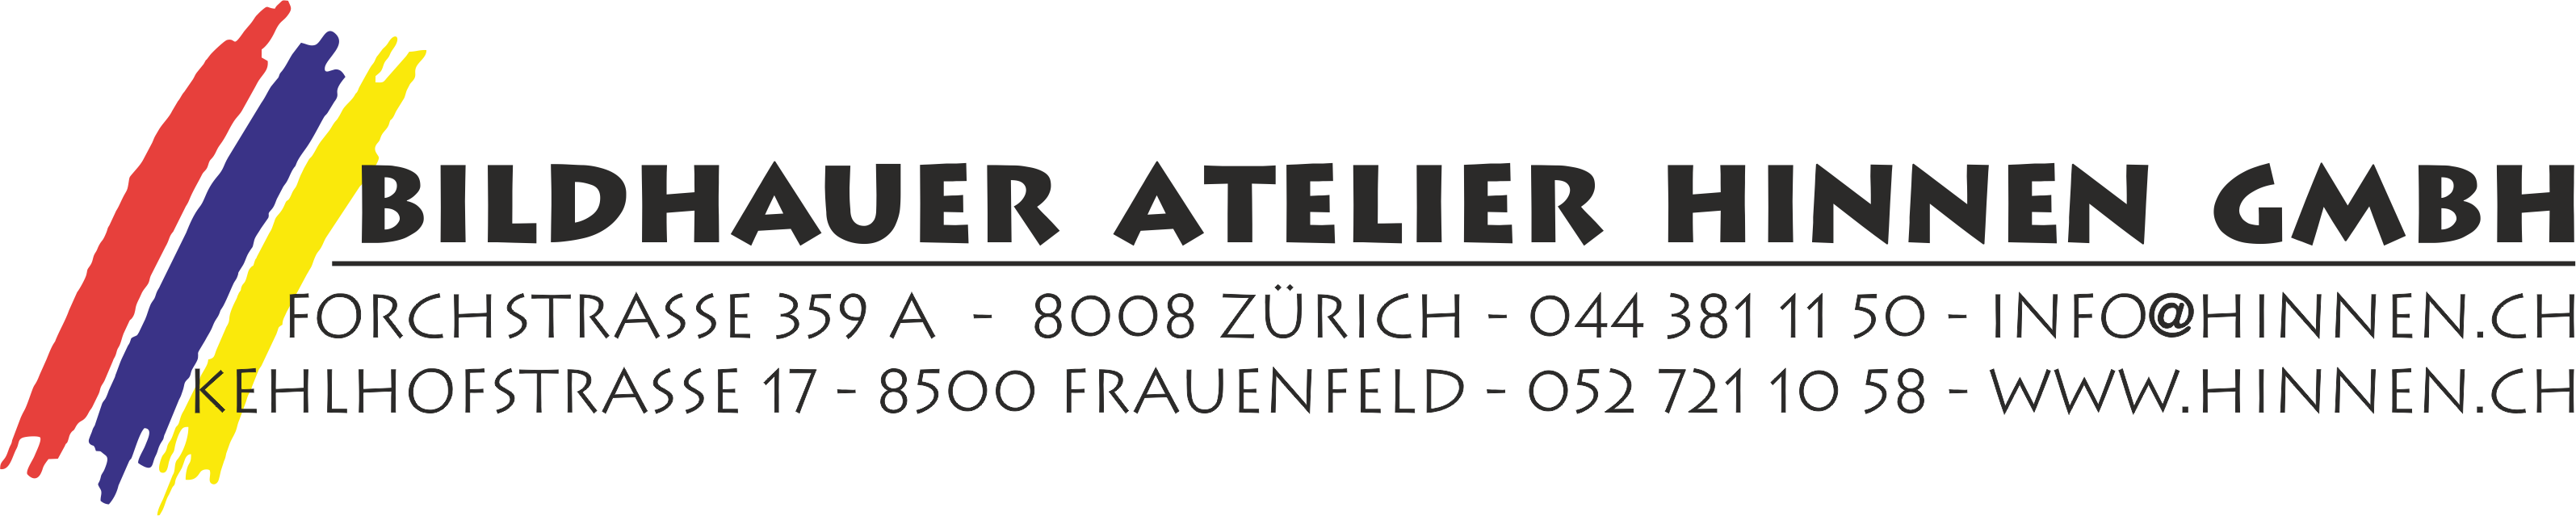       Bildhauer Atelier Hinnen: Steinbildhauer Arbeiten in Zürich und Frauenfeld